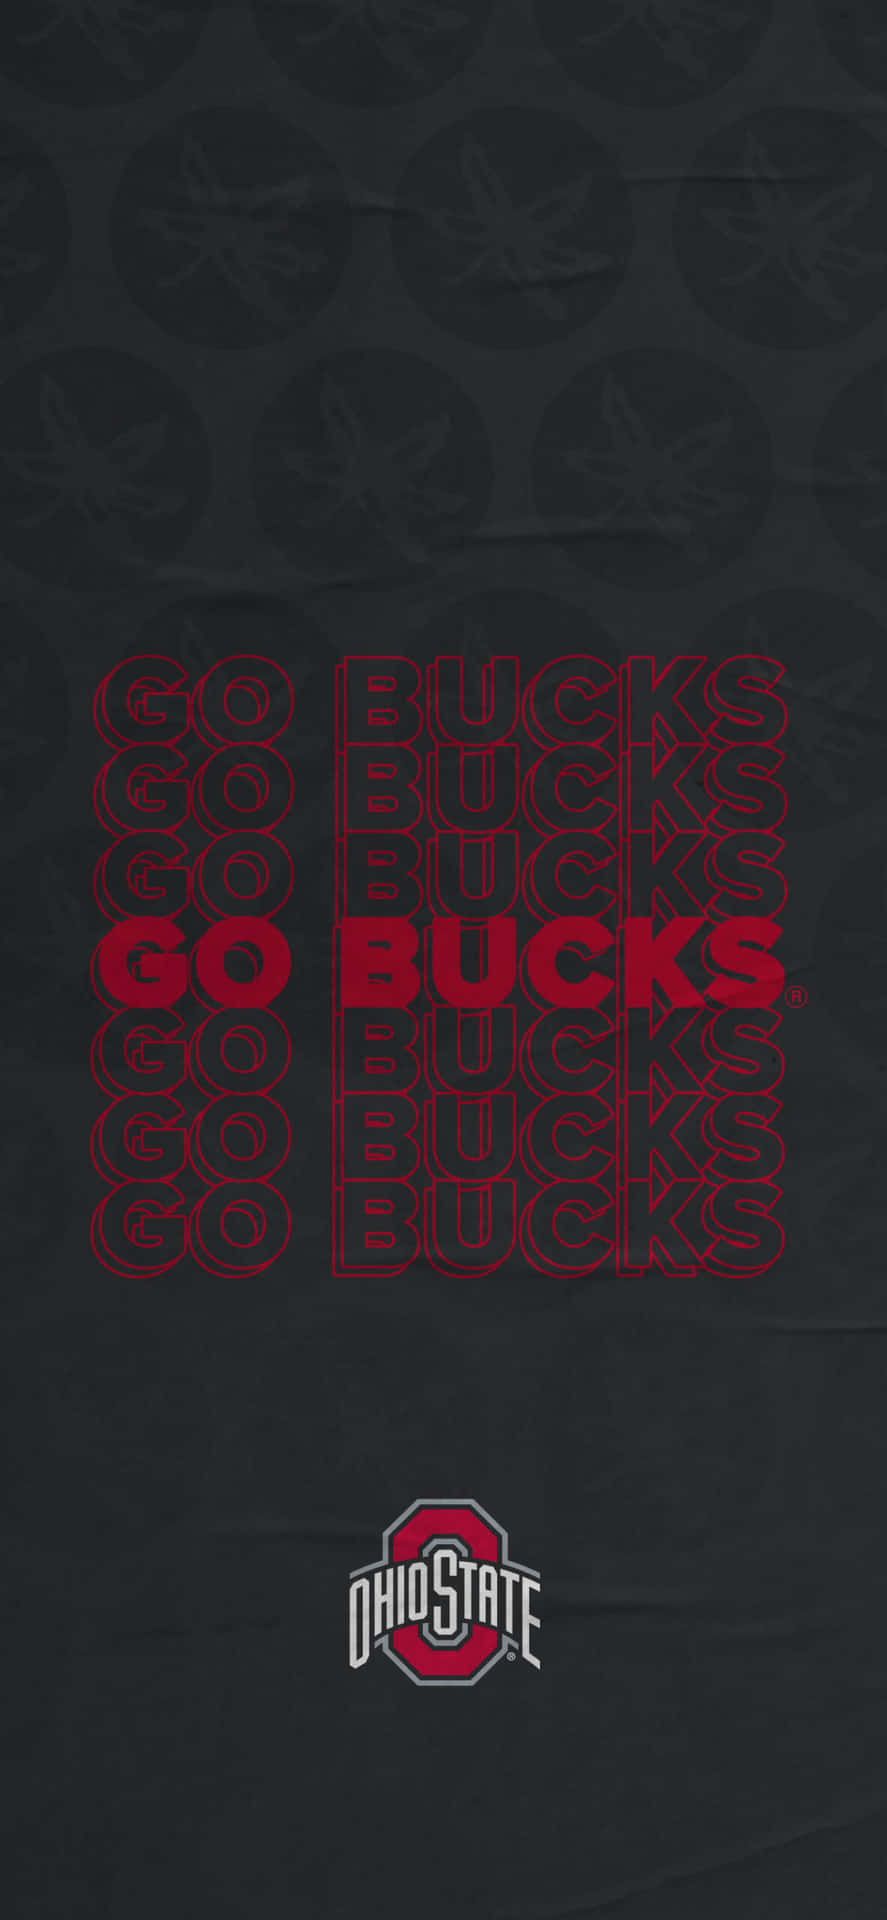 Ohio State Buckeyes Go Bucks T-shirt Wallpaper